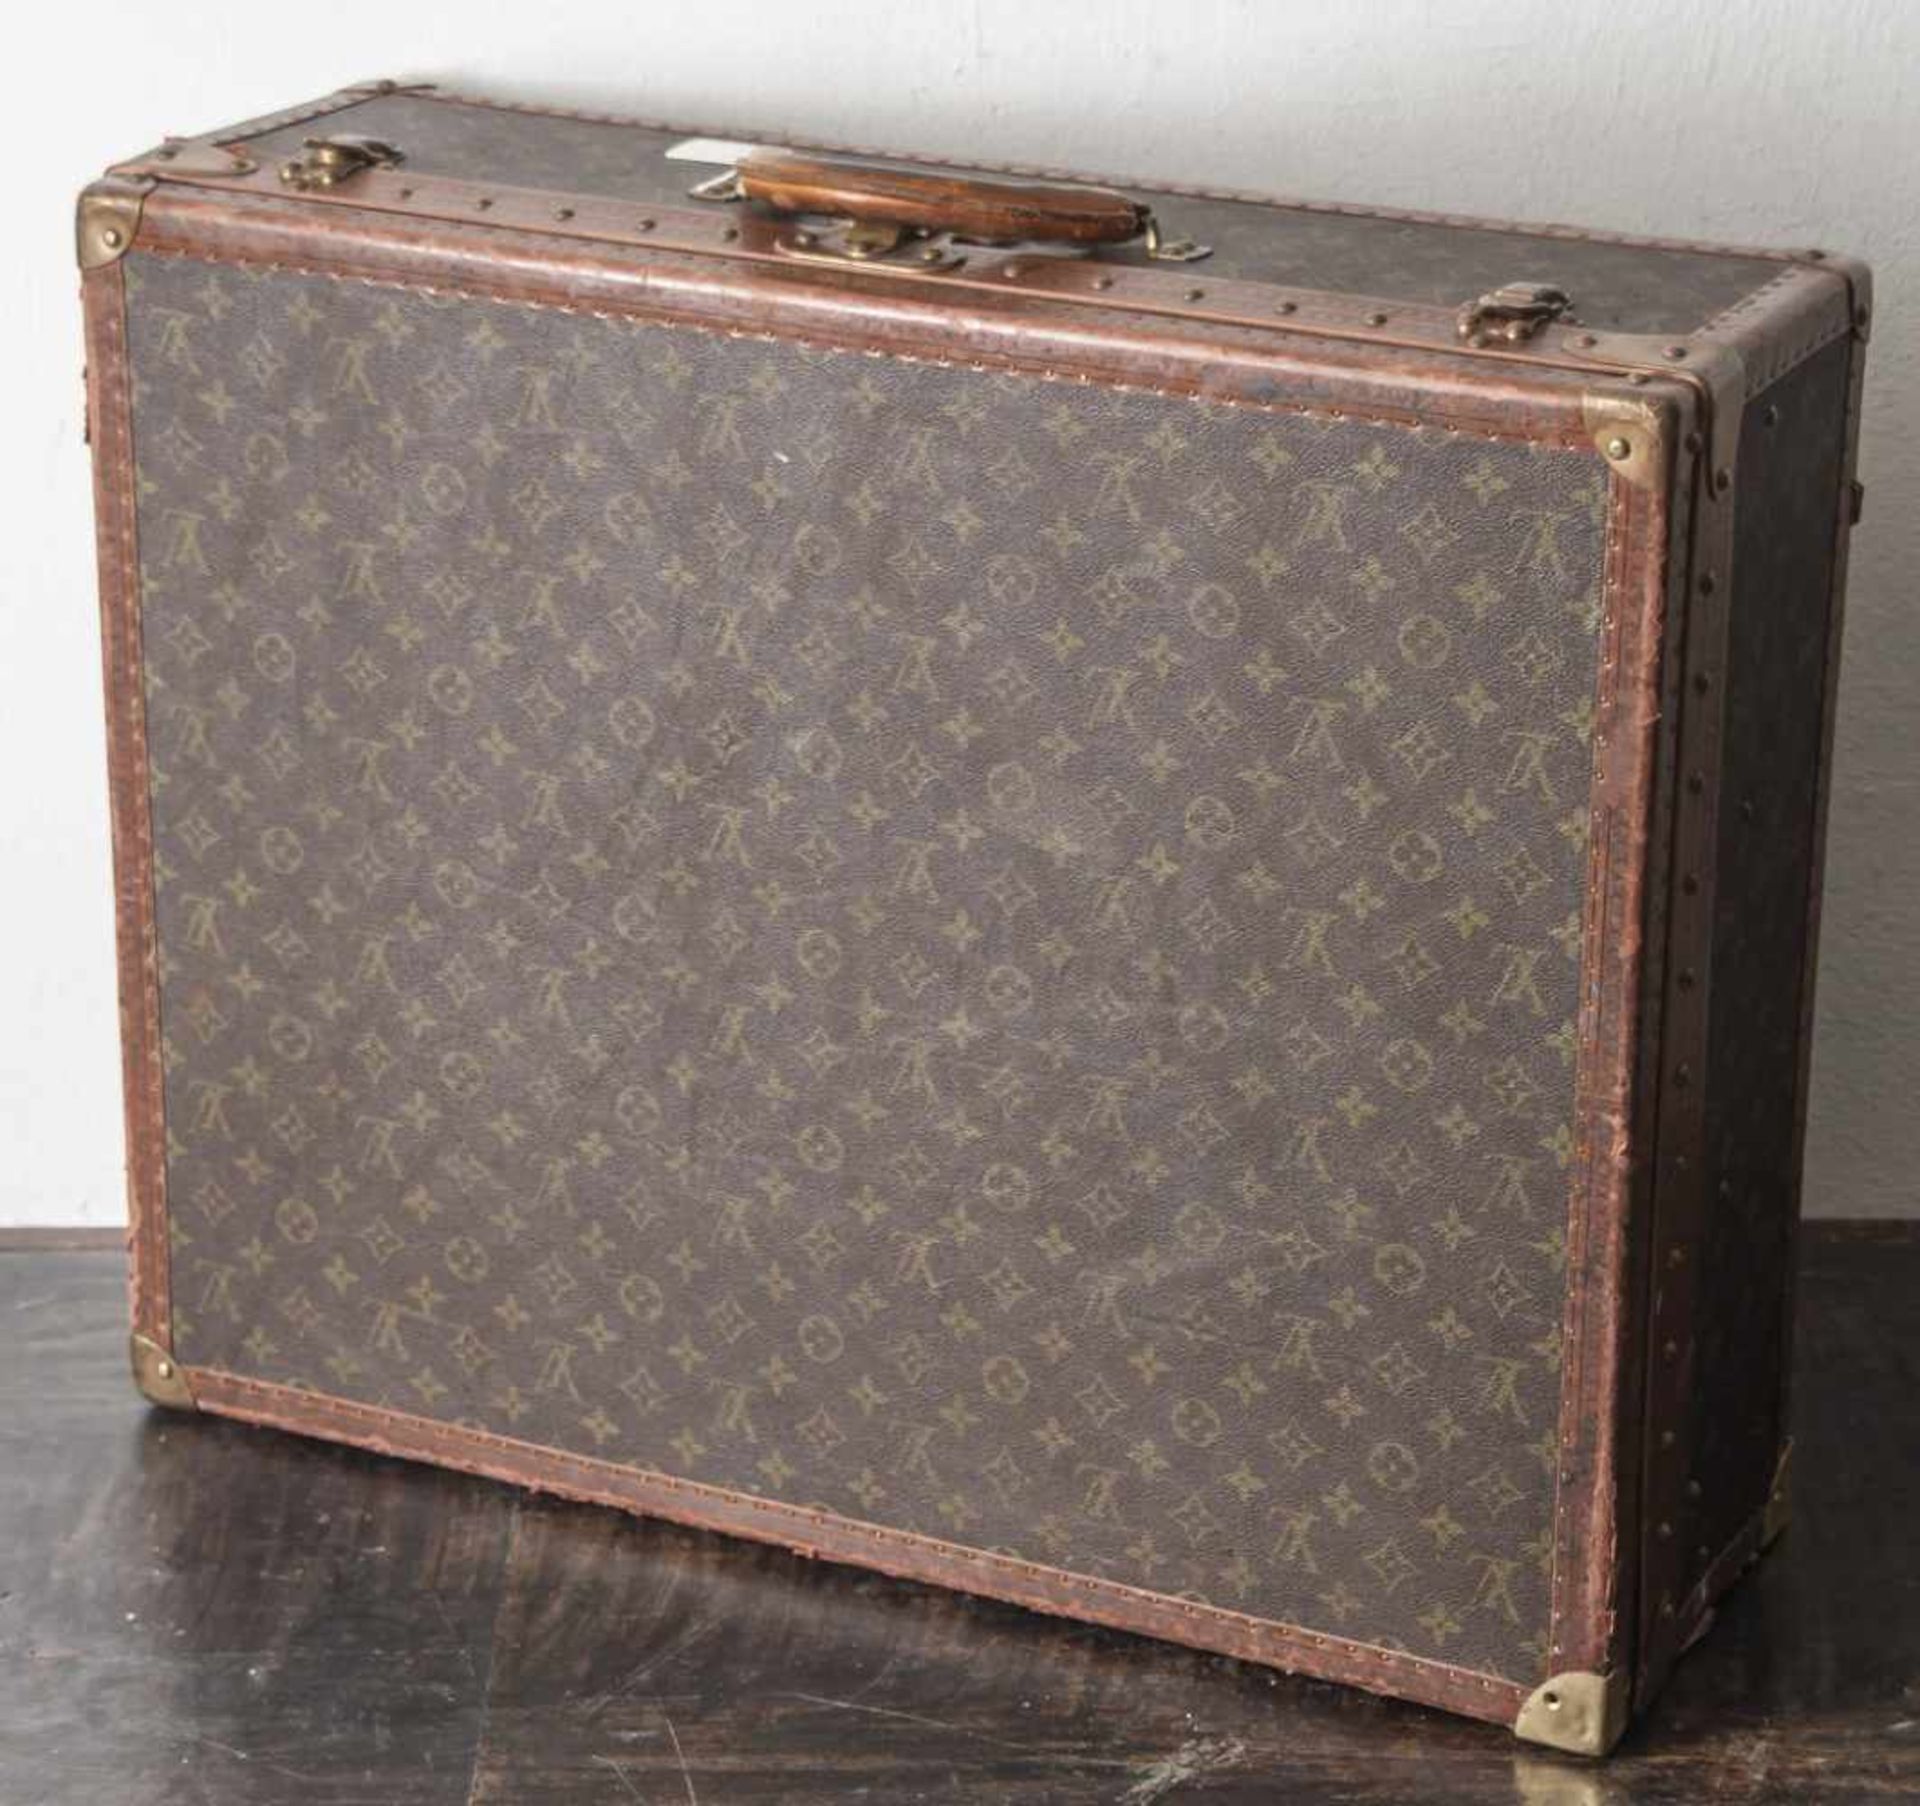 Alter Louis Vuittonkoffer "Alzer 65", Hartschalenkoffer mit dem klassischen LV-Signet Aufdruck